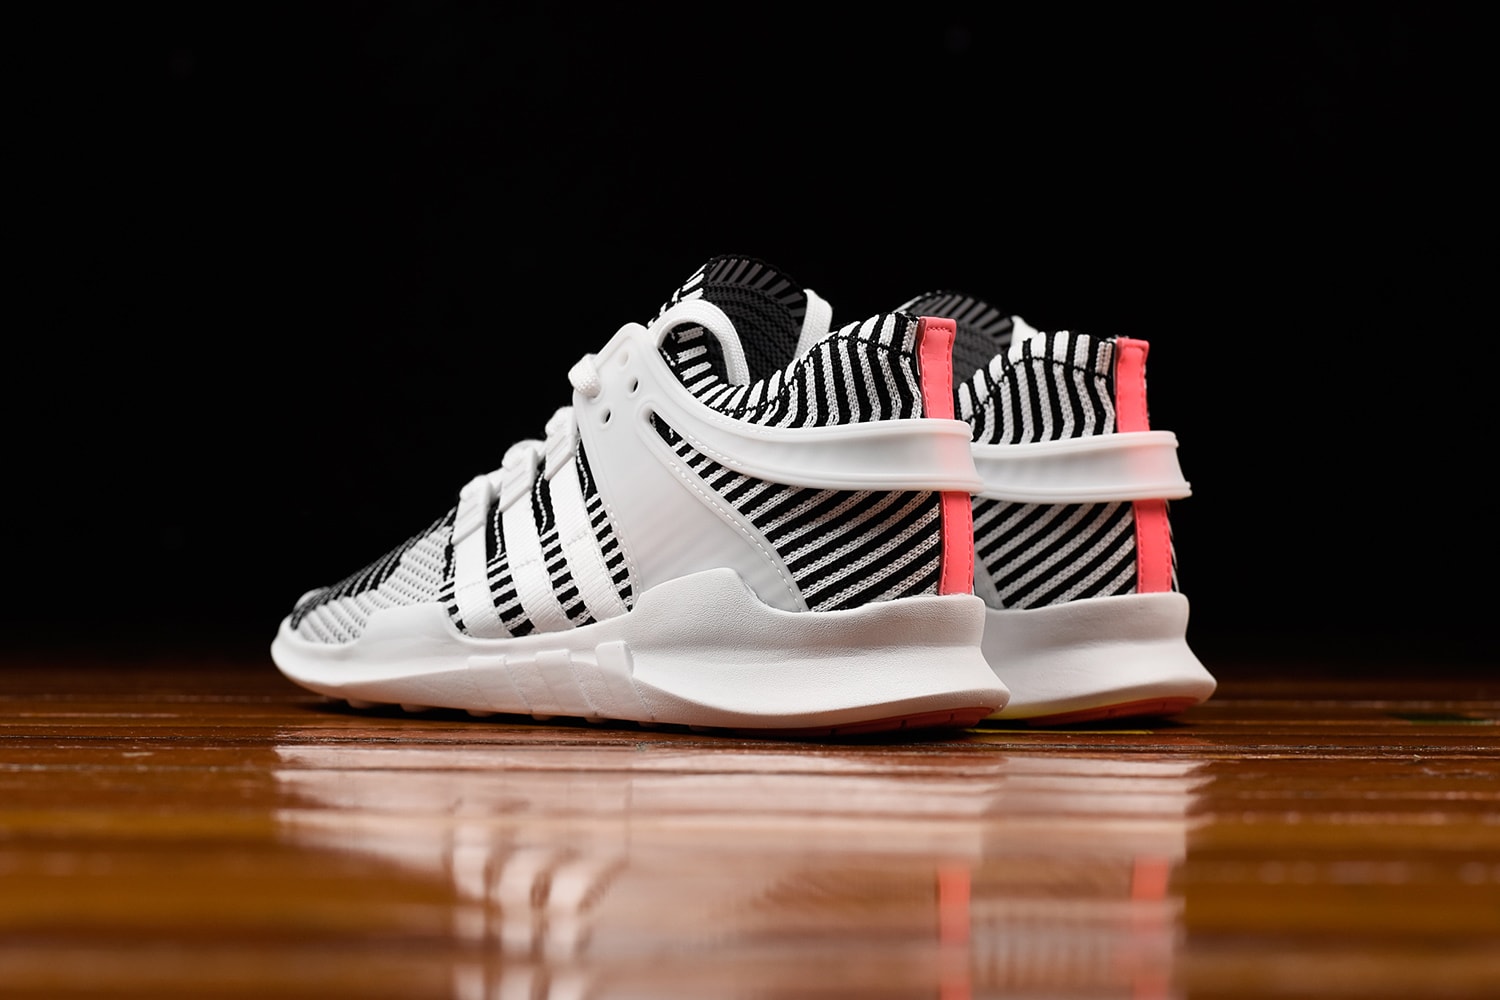 adidas Originals EQT Support ADV Primeknit “Zebra”